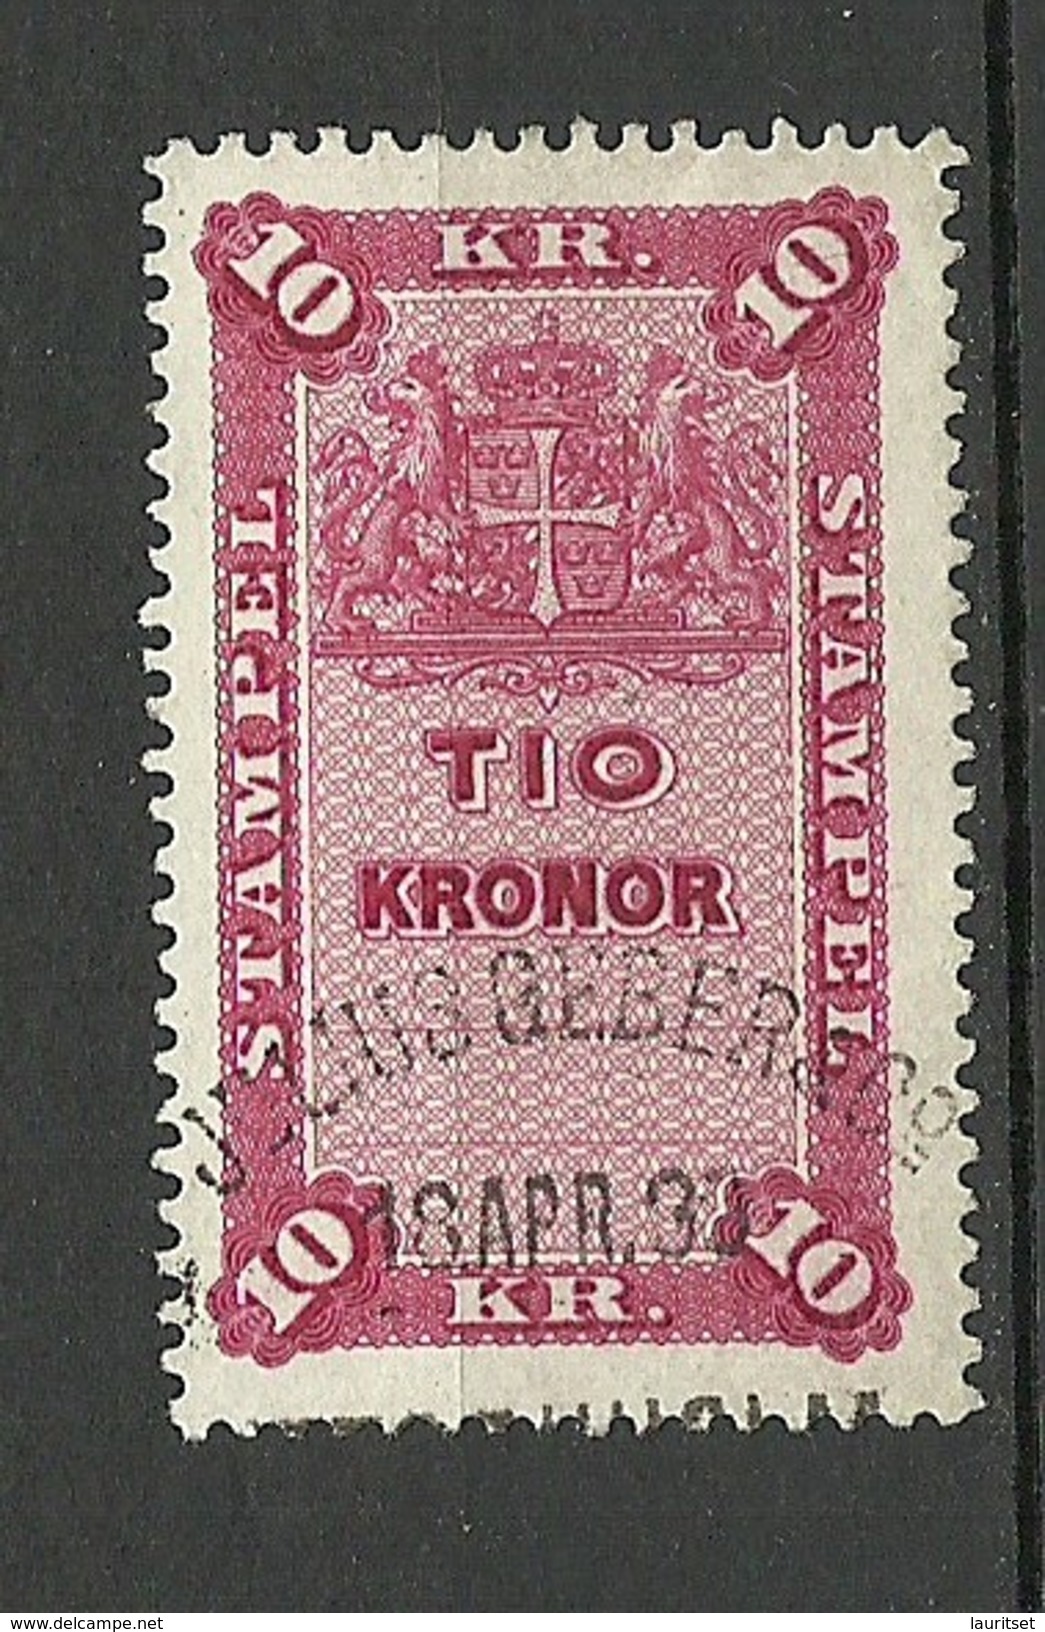 SCHWEDEN Sweden Ca 1880-1895 Stempelmarken Documentary 10 Kr. O - Revenue Stamps